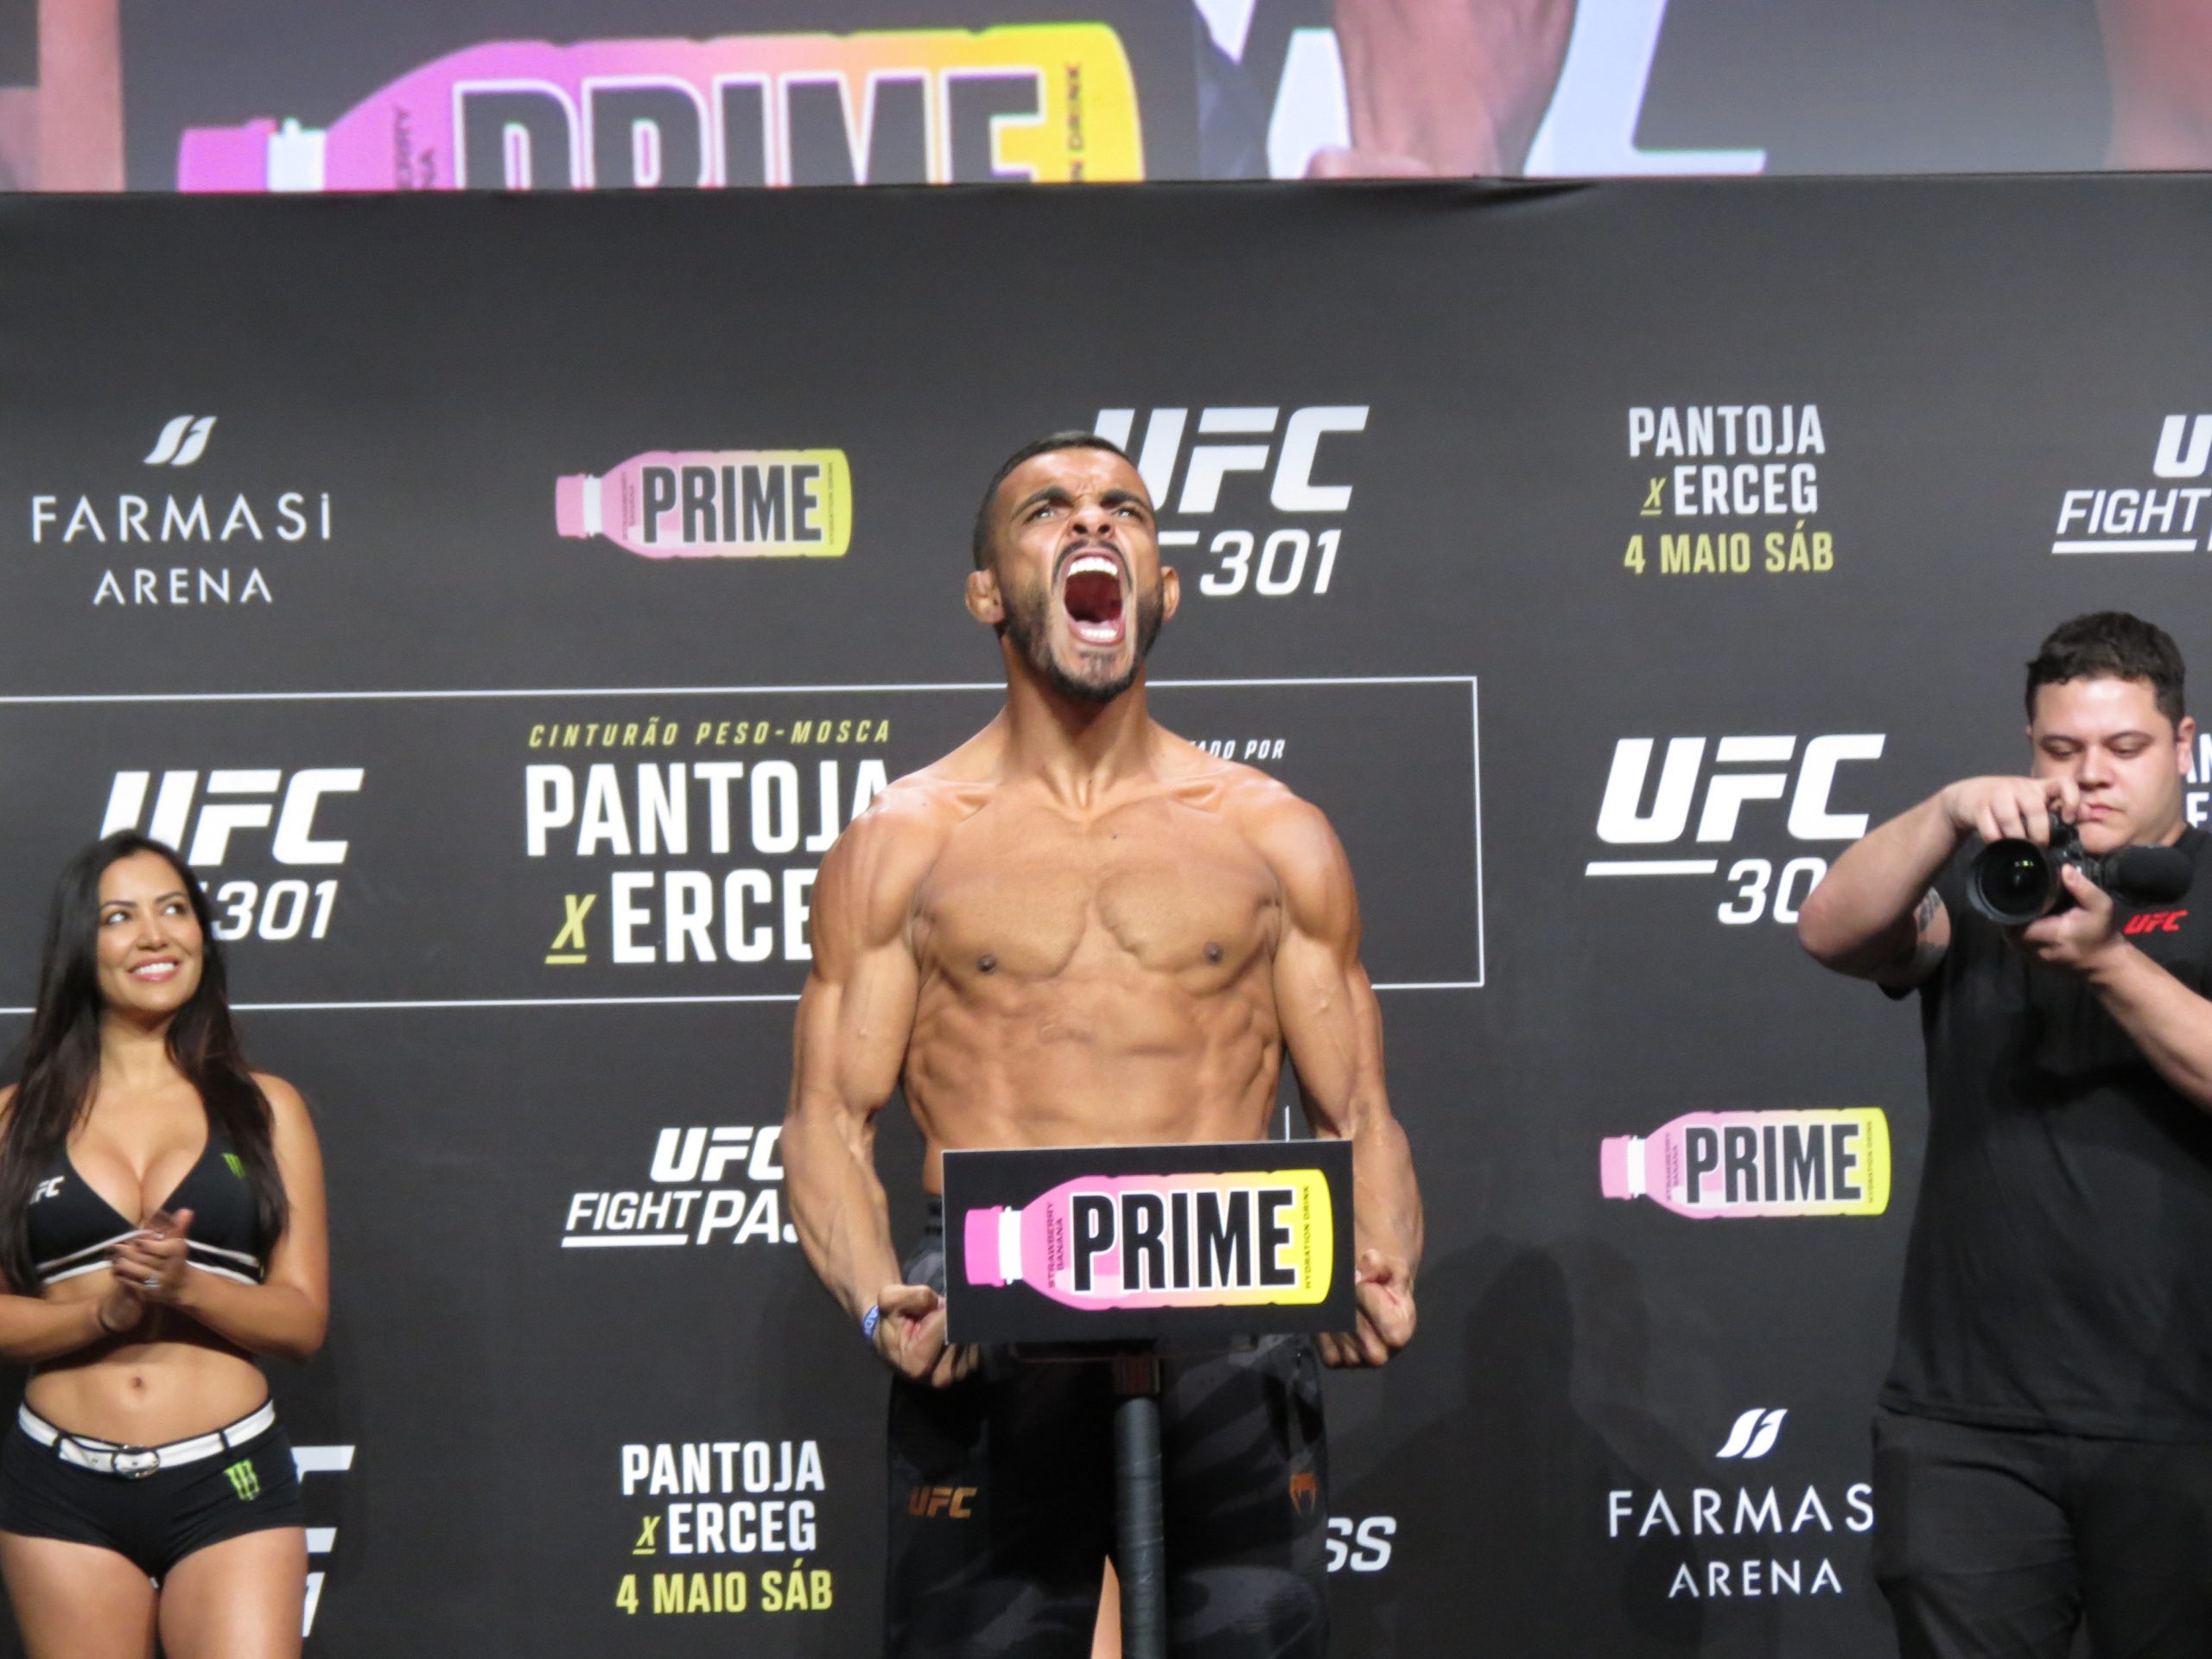 Ismael Marreta revela ‘medo’ antes do UFC Rio e destaca pressão por vitória: ‘Estava mal visto’